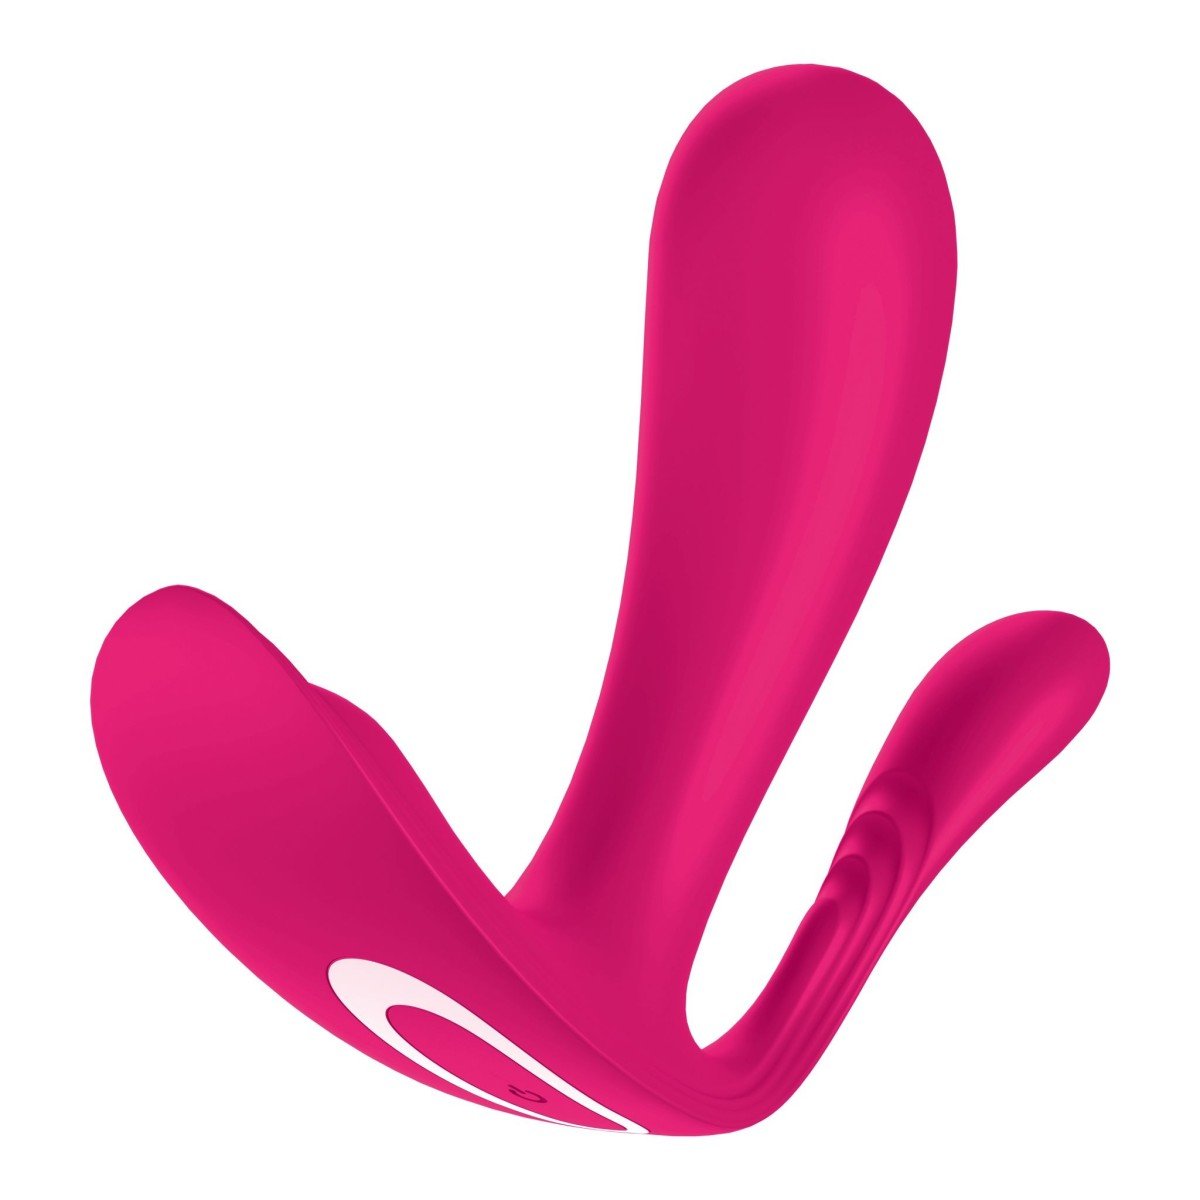 Vibrátor do kalhotek Satisfyer Top Secret + růžový, chytrý silikonový vibrátor s anální stimulací